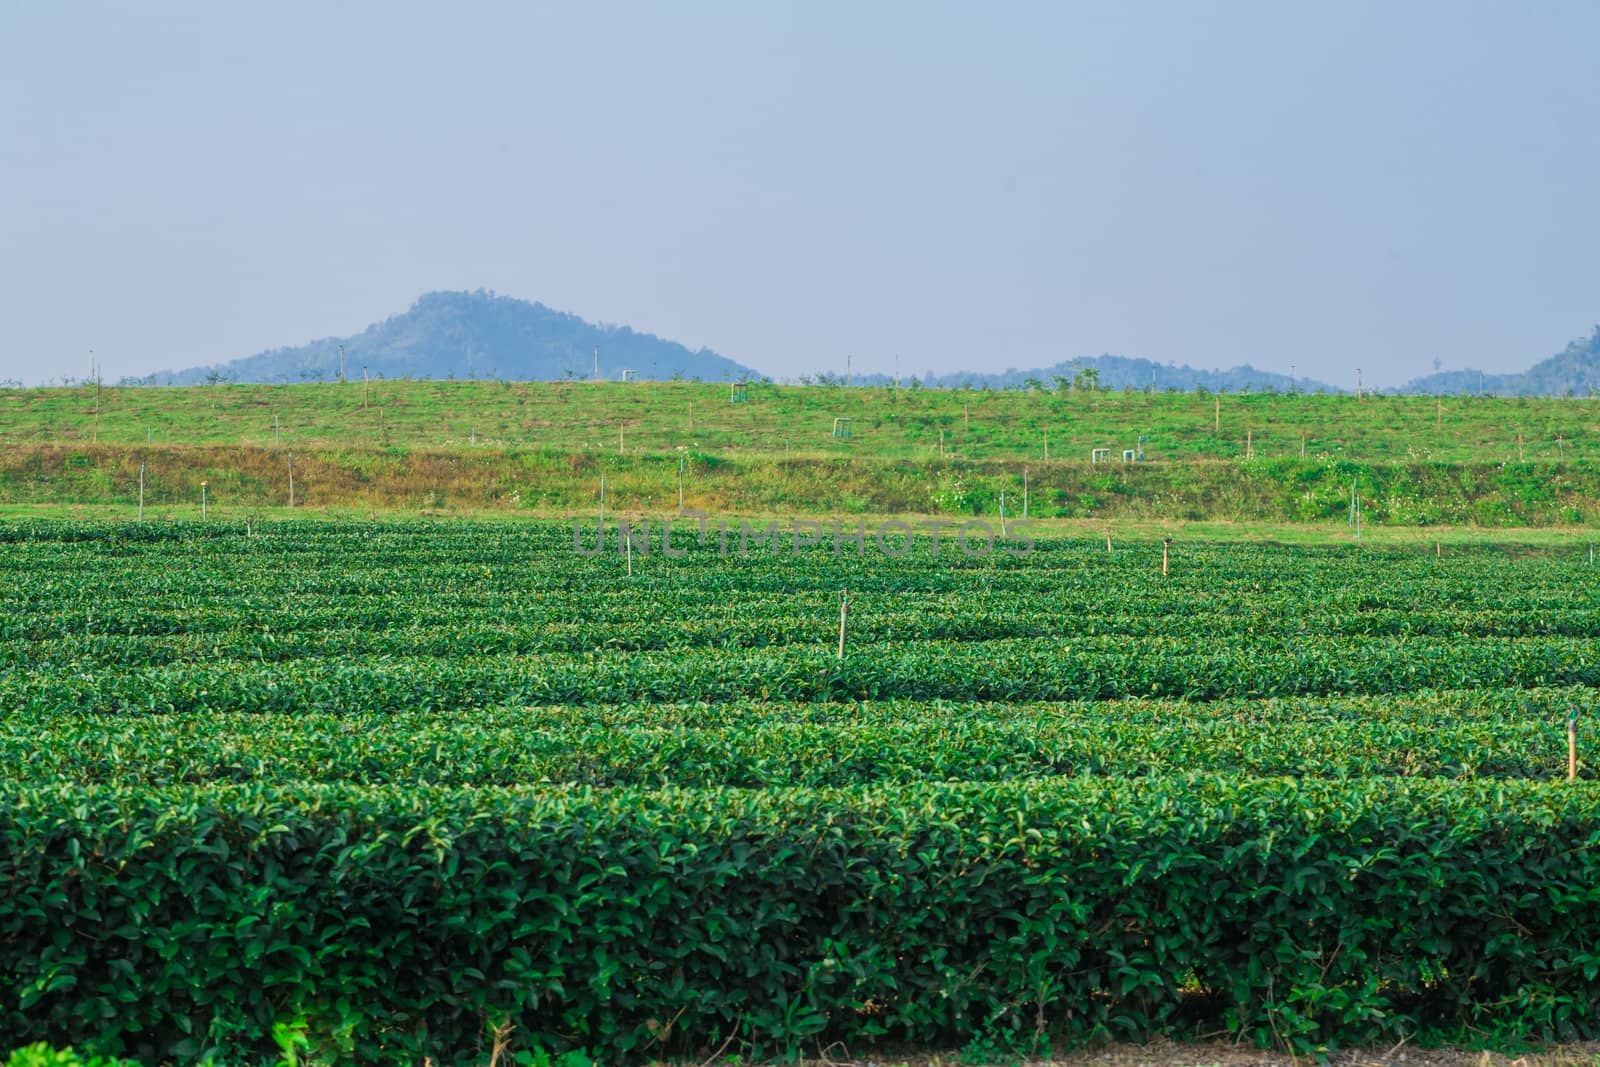 Green tea farm with blue sky background, Row of tea field